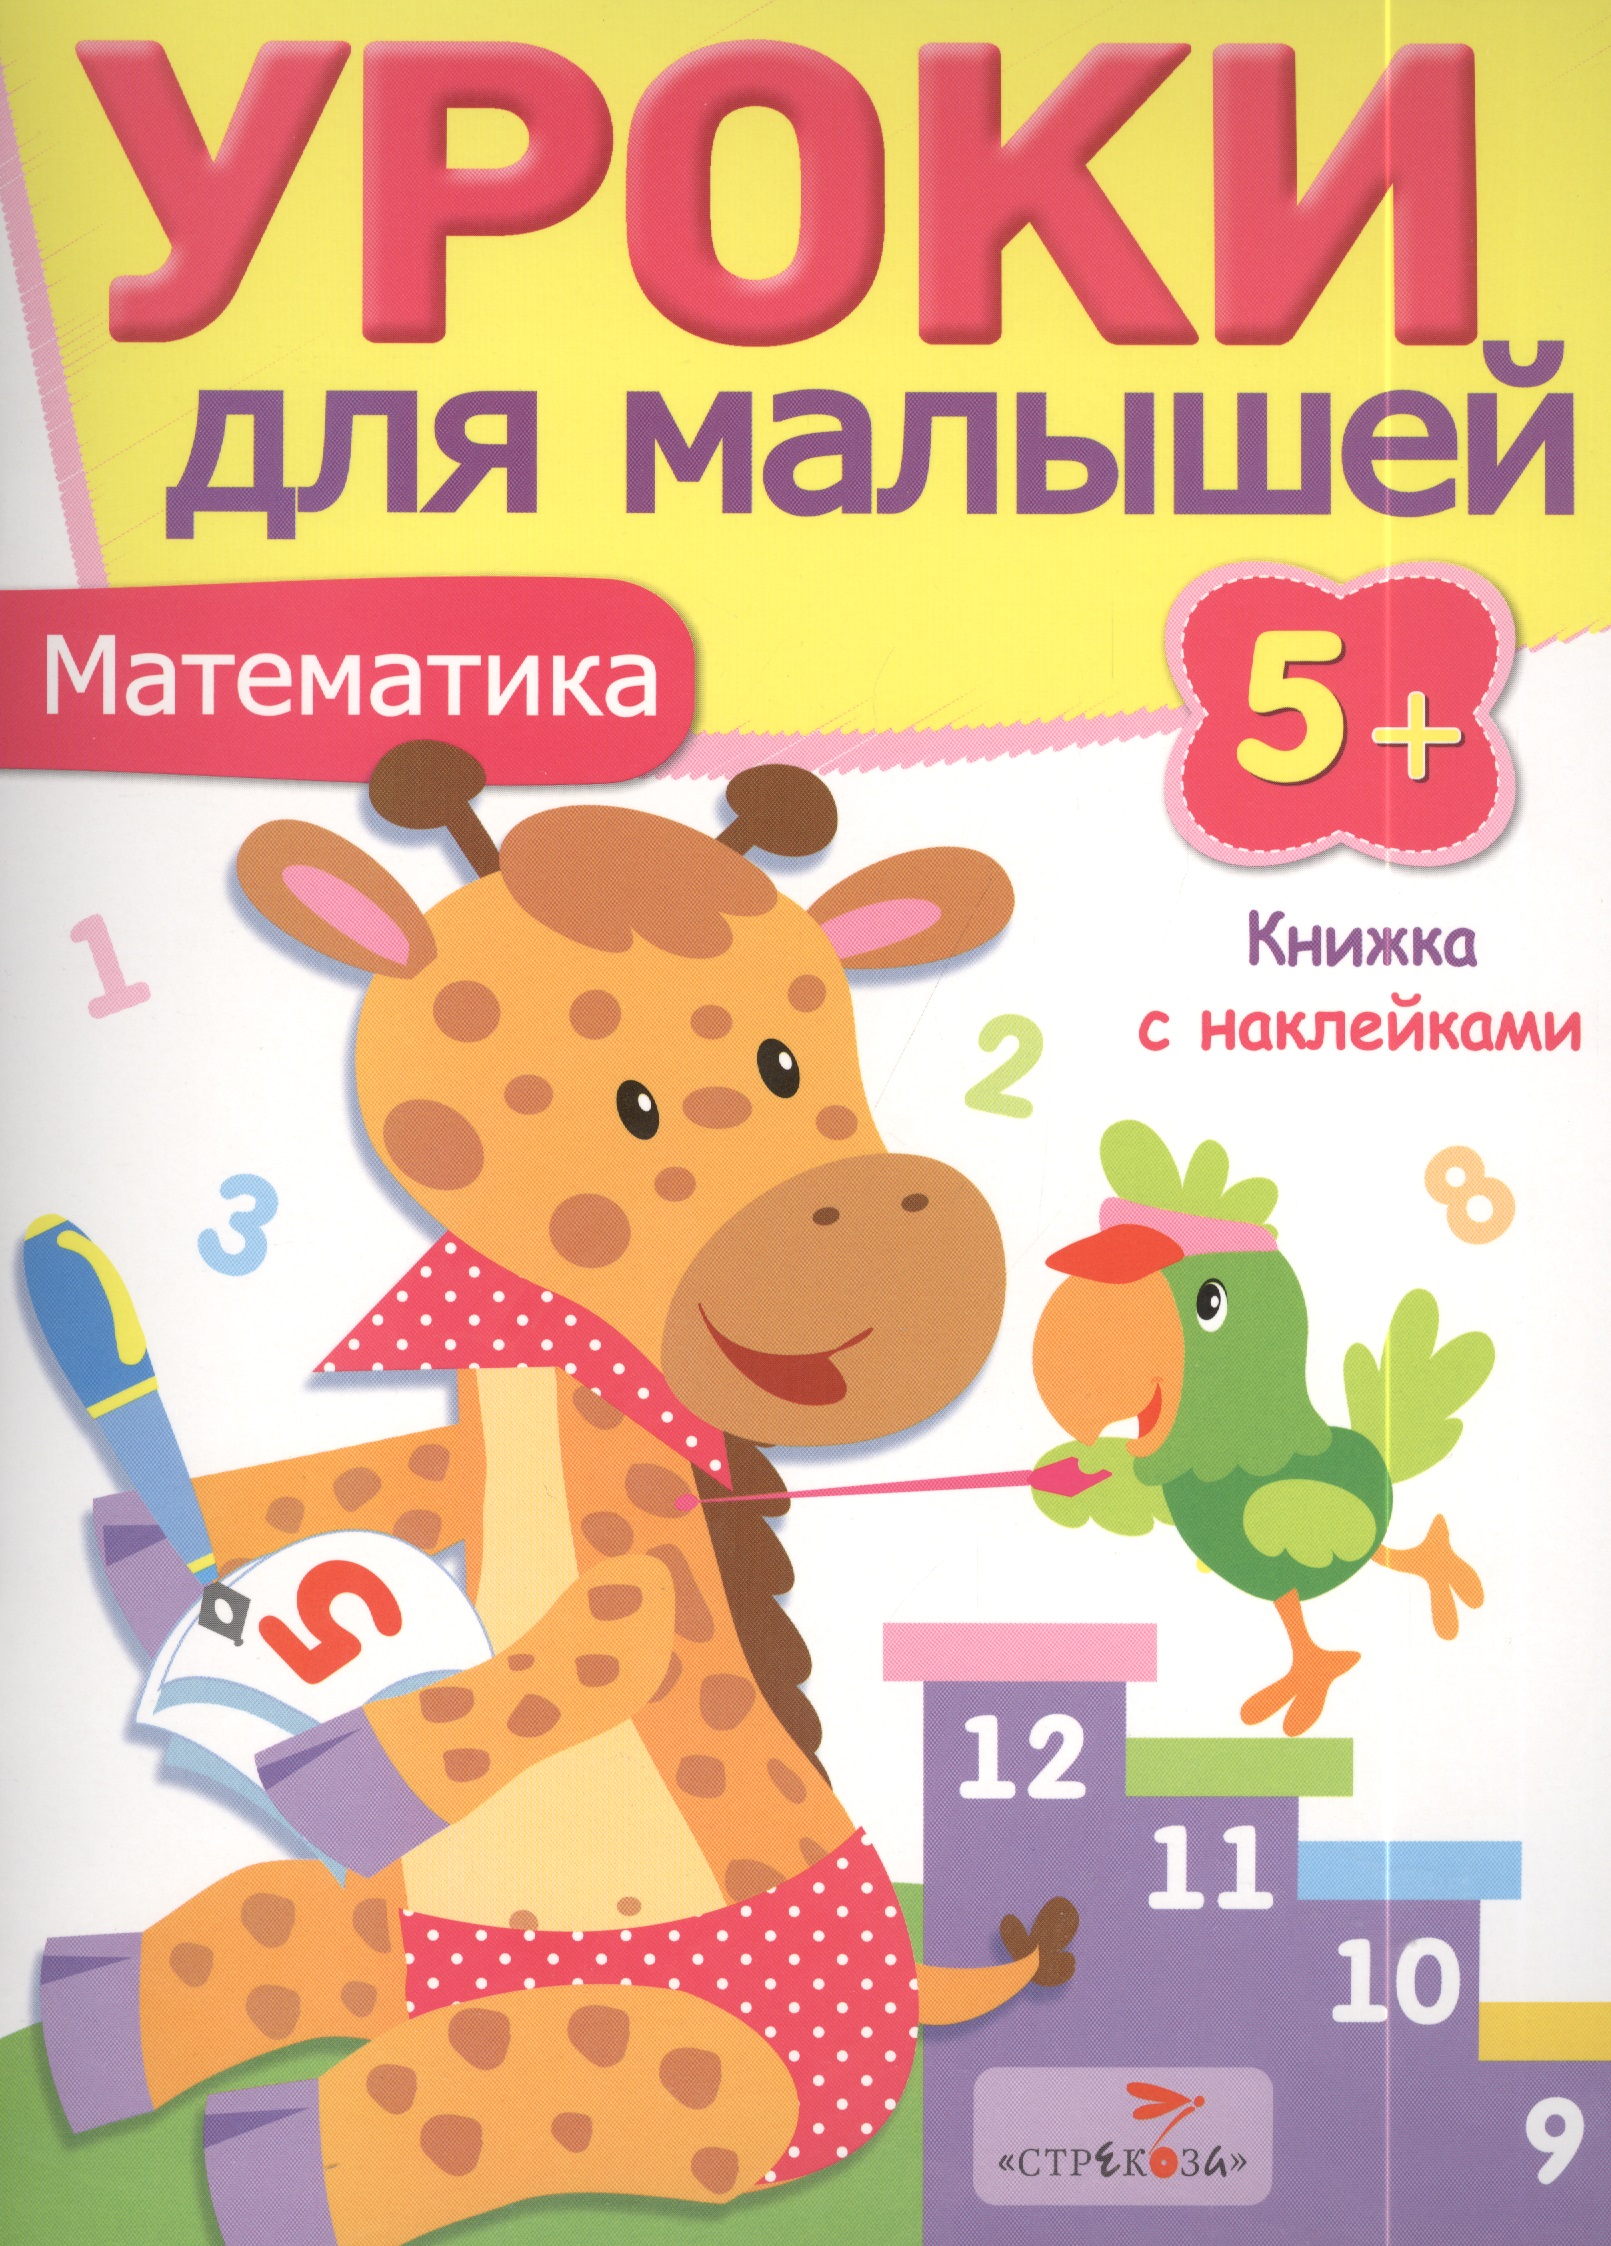 Попова И. Уроки для малышей 5+. Математика попова и уроки для малышей 5 решаем задачи